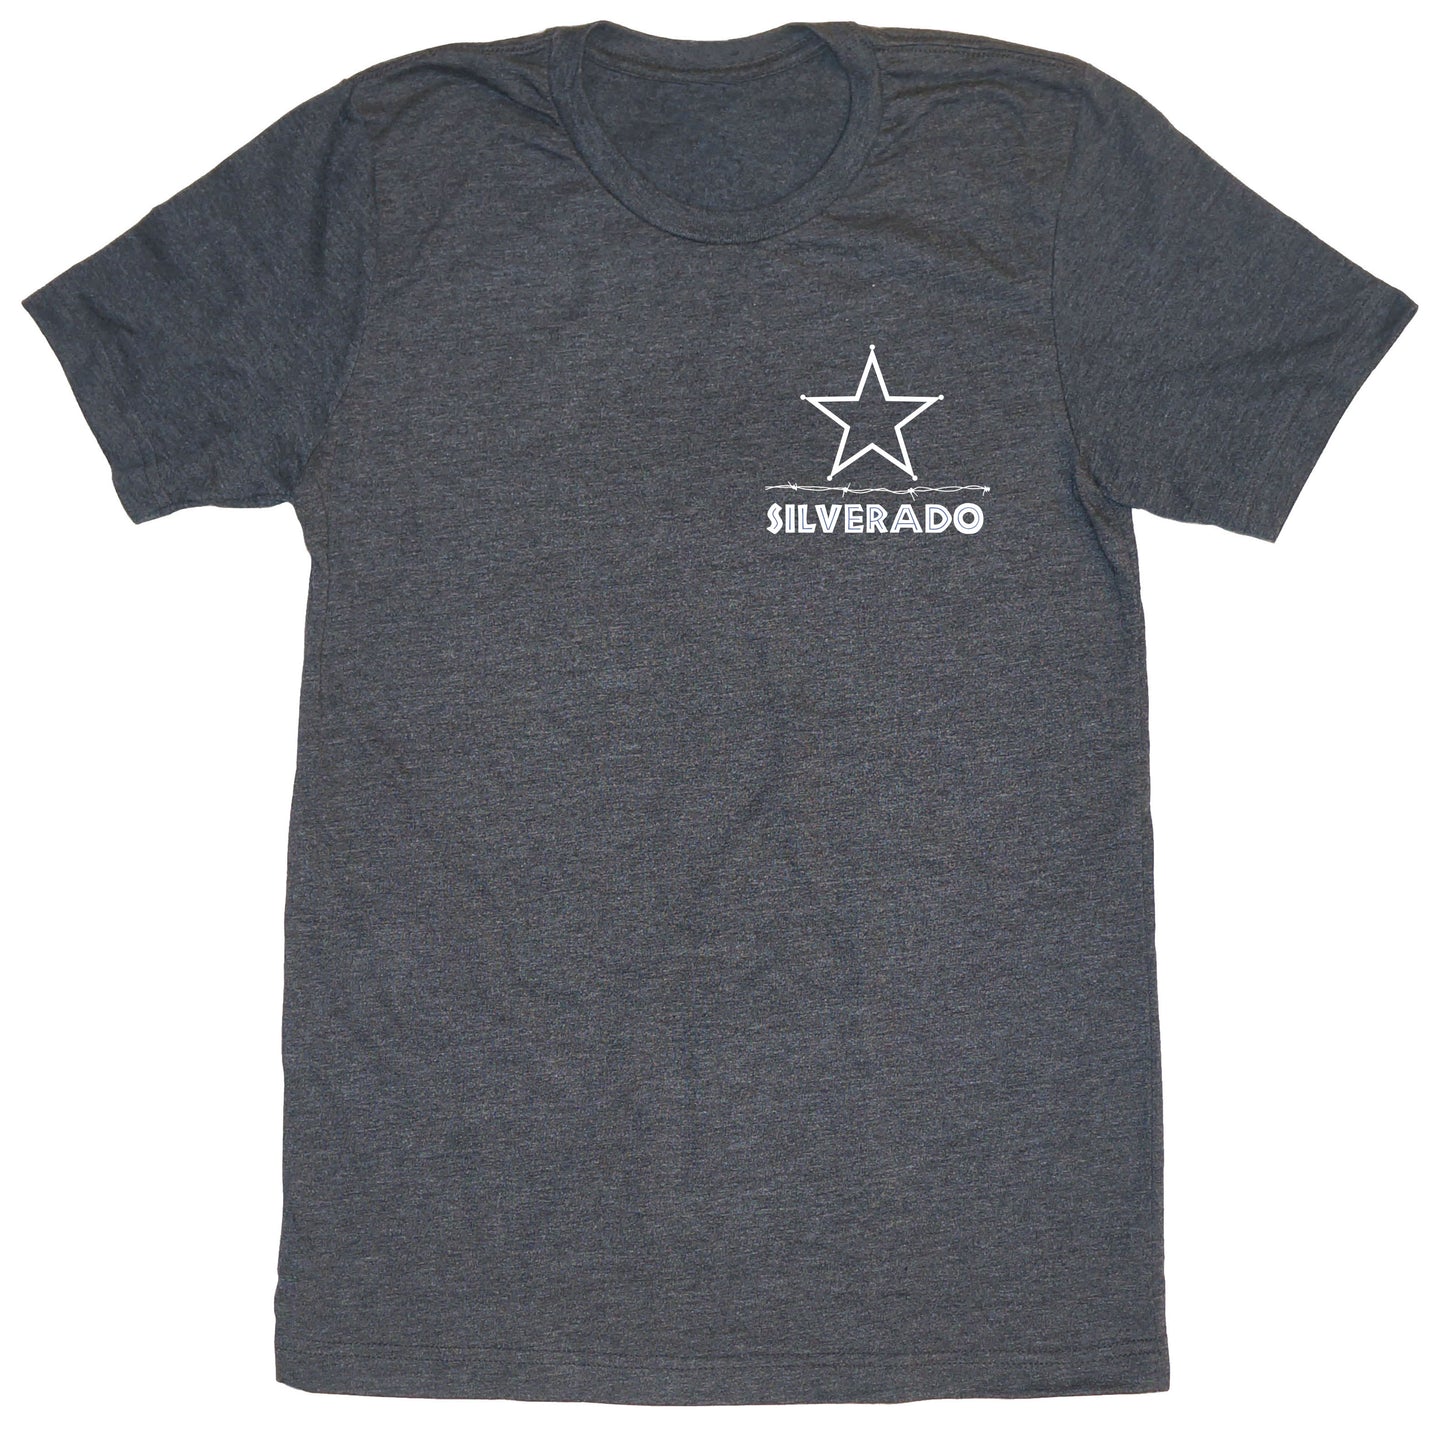 Silverado Classic T-Shirt